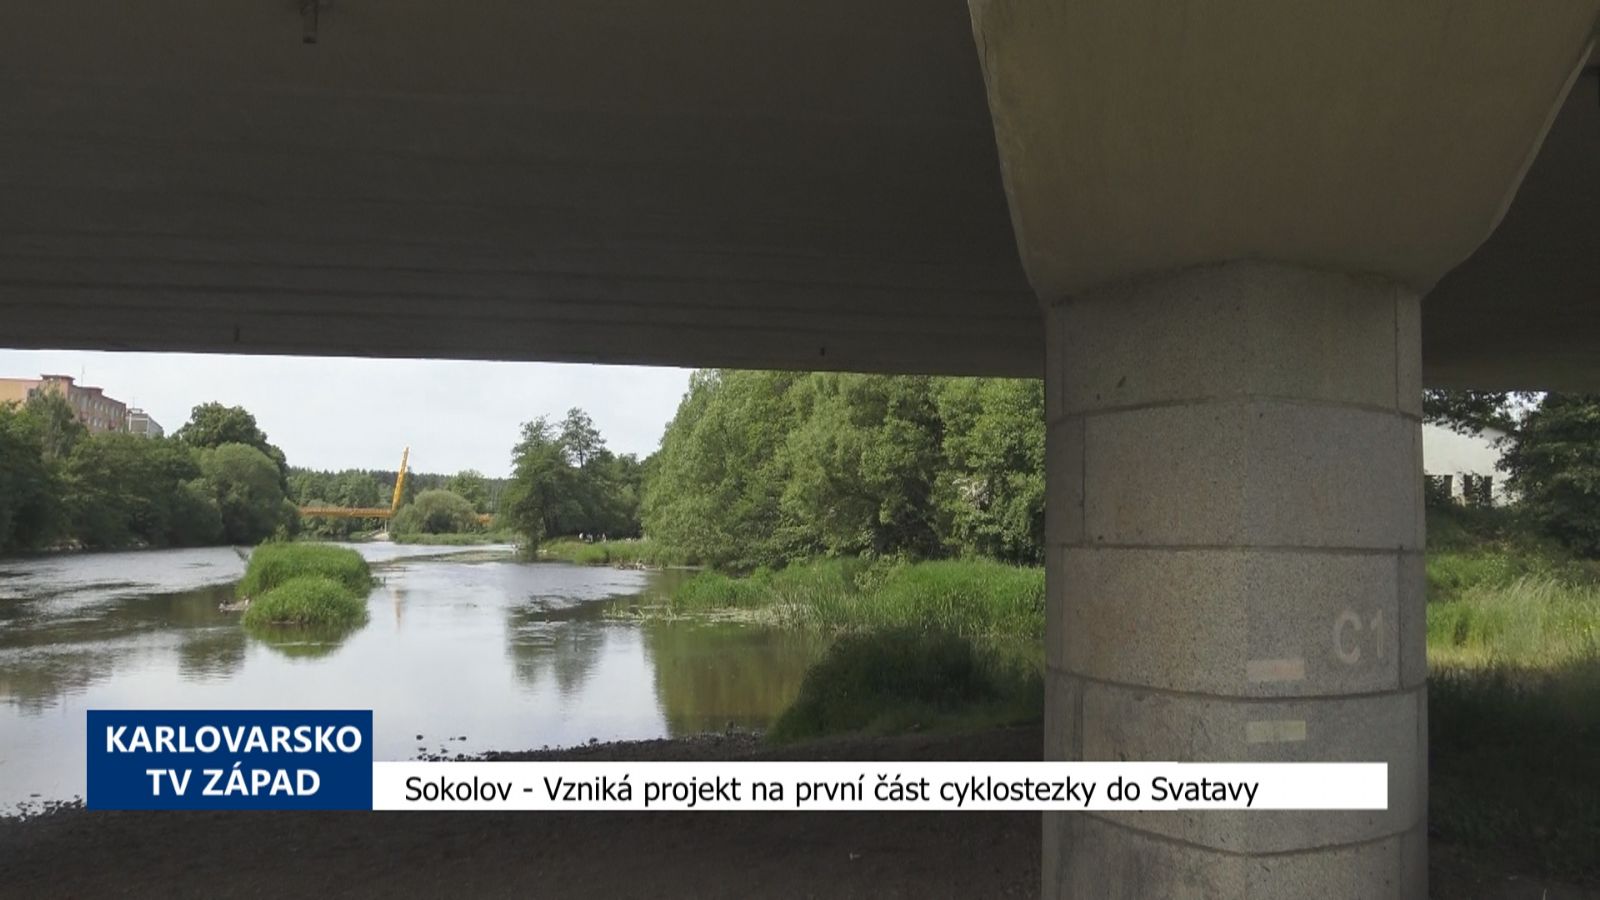 Sokolov: Vzniká projekt na první část cyklostezky do Svatavy (TV Západ)